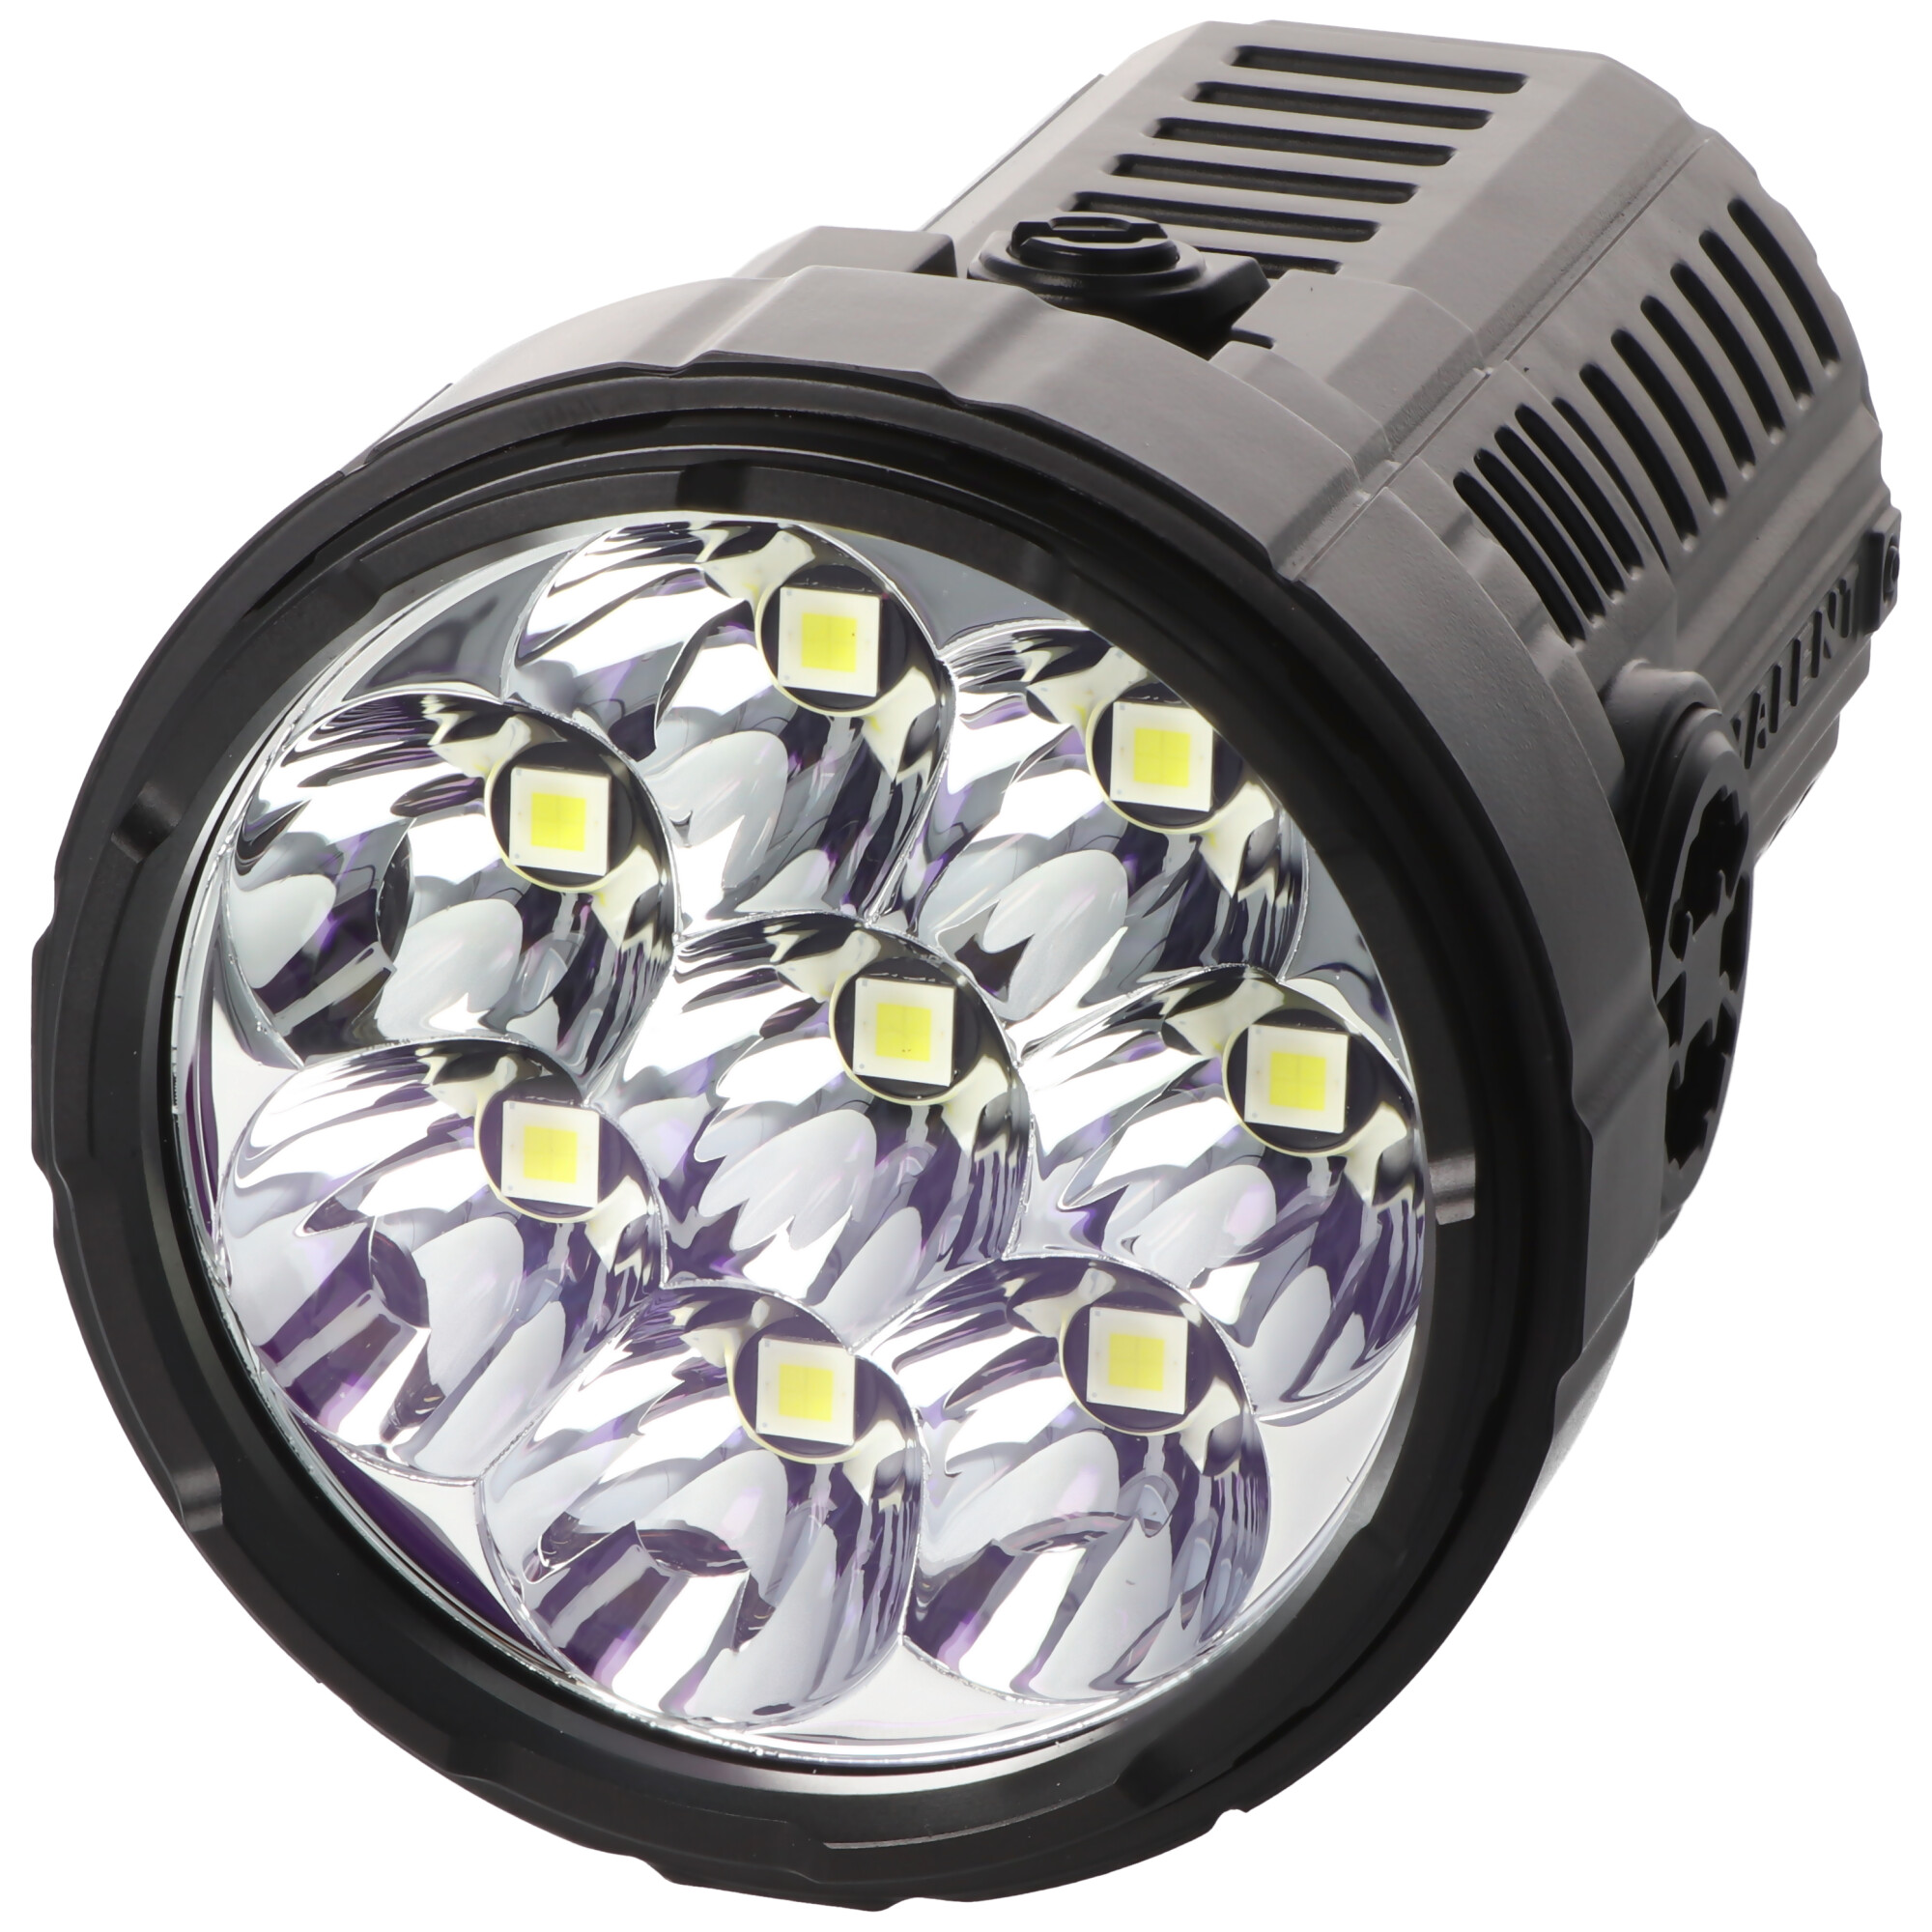 Imalent RS50 LED-Taschenlampe mit 20.000 Lumen, Reichweite 1.160 Meter, inklusive 3x 21700 Li-Ion Akku